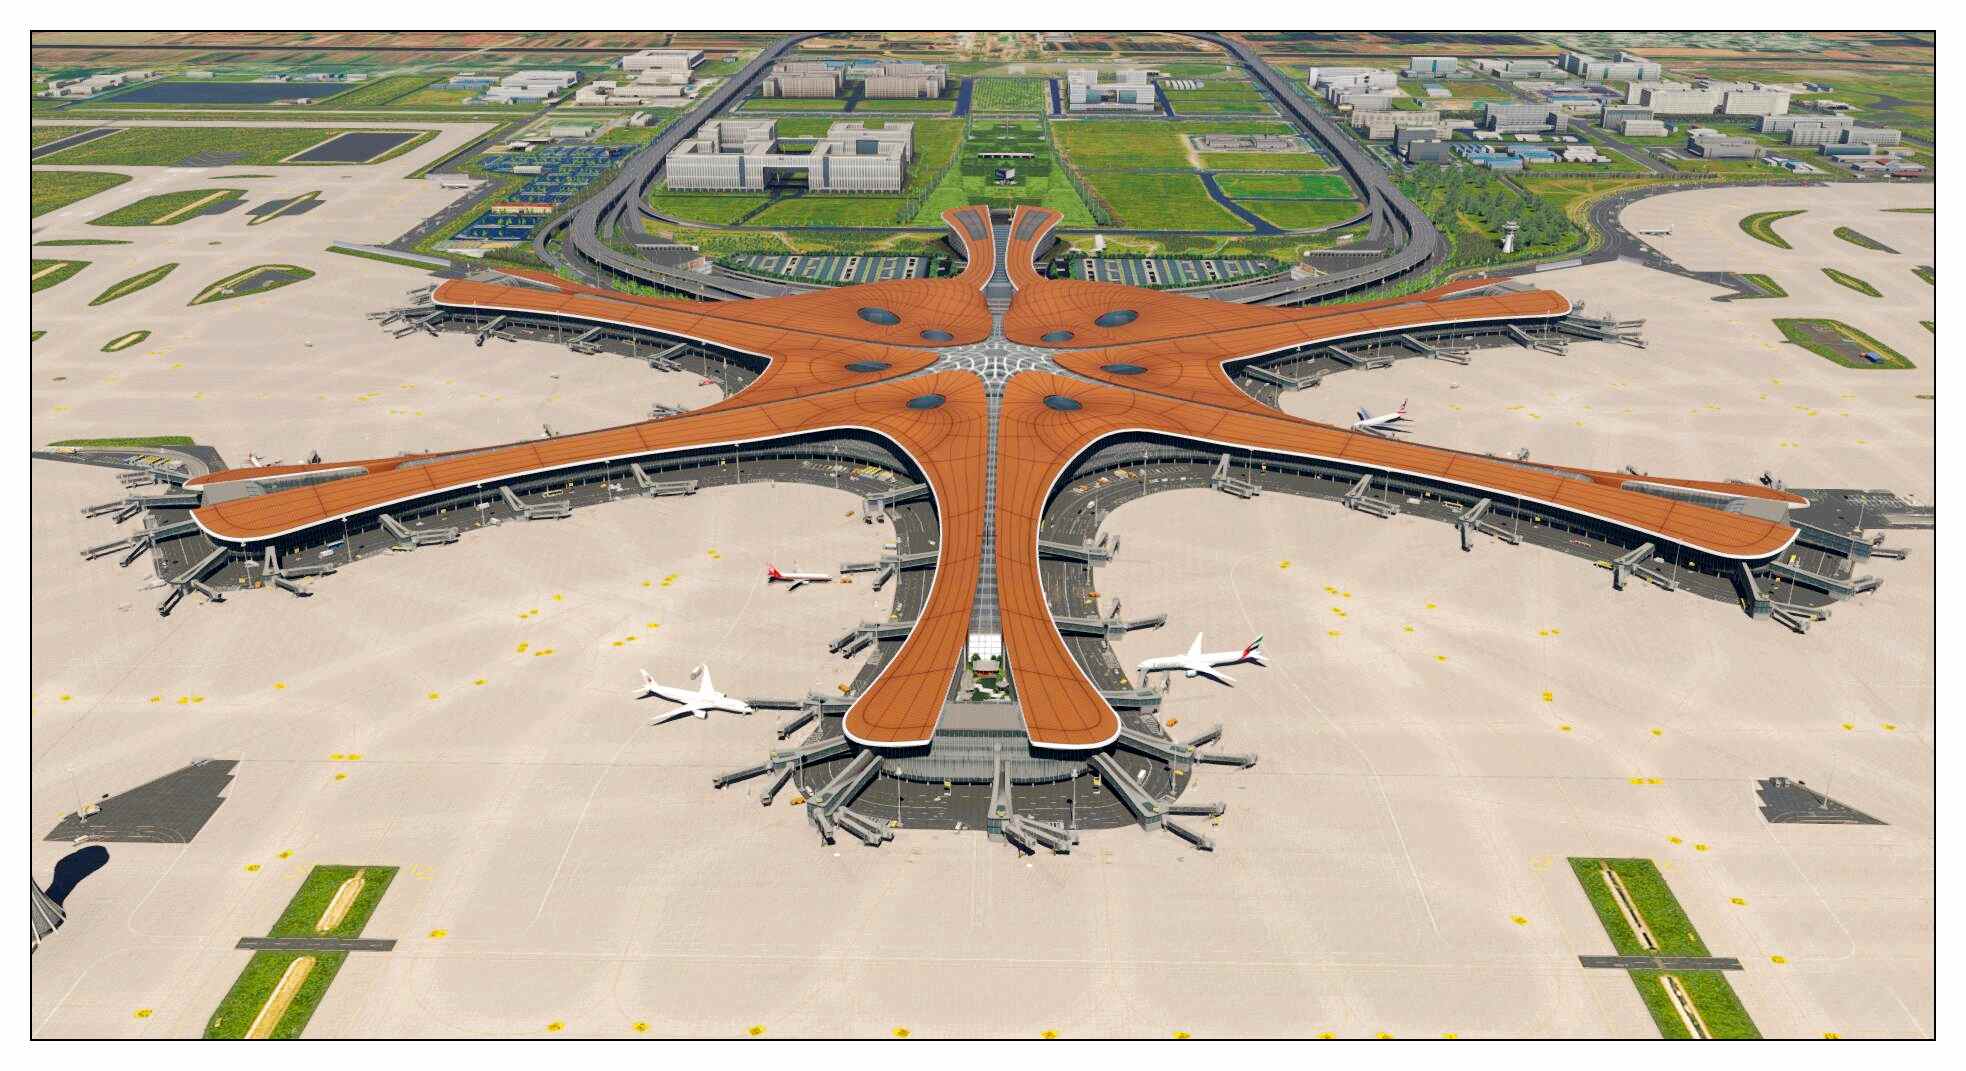 【X-Plane】ZBAD北京大兴国际机场-正式发布-2366 